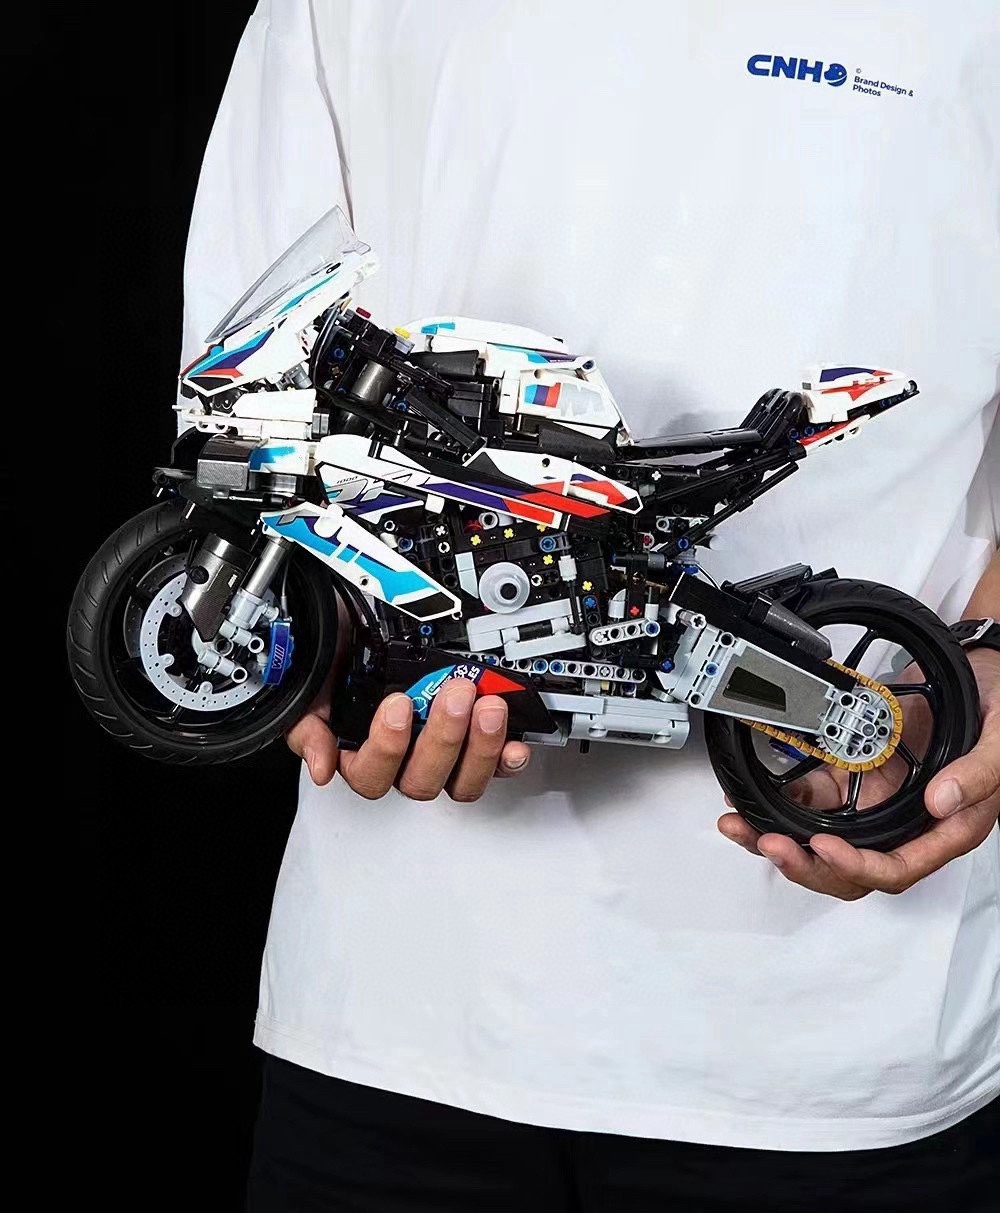 宝马M1000RR摩托车积木拼装模型大型高难度玩具男孩益智生日礼物7